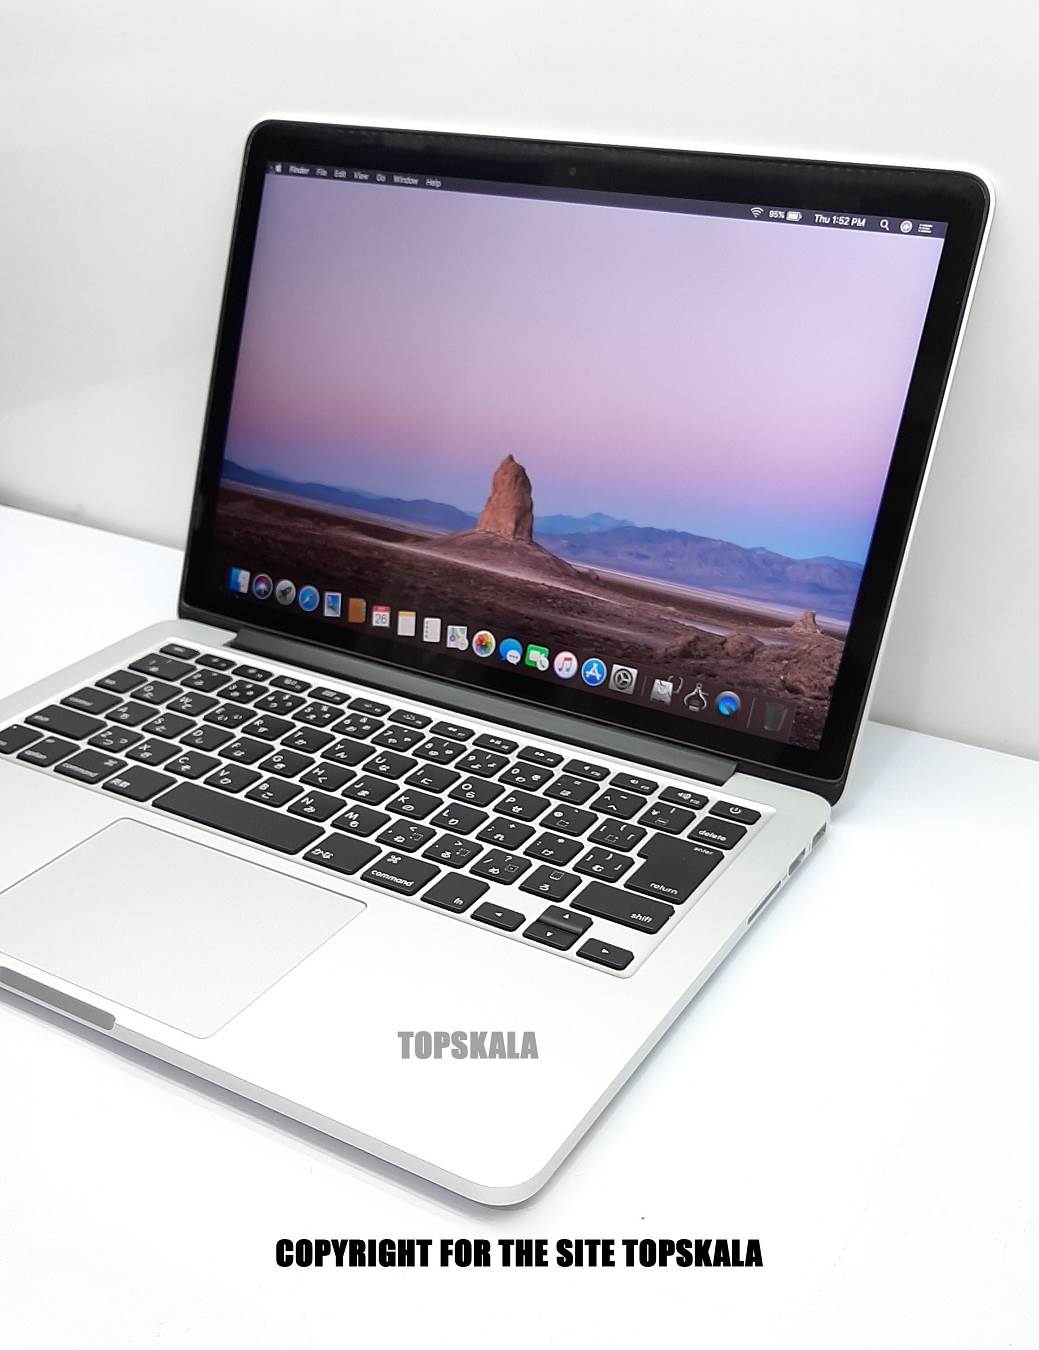 لپ تاپ استوک اپل مدل MacBook Pro Late 2015 - 13 inch با مشخصات i5-2.7GHz-8GB-256GB-SSD-2GB-intel-iris-6100